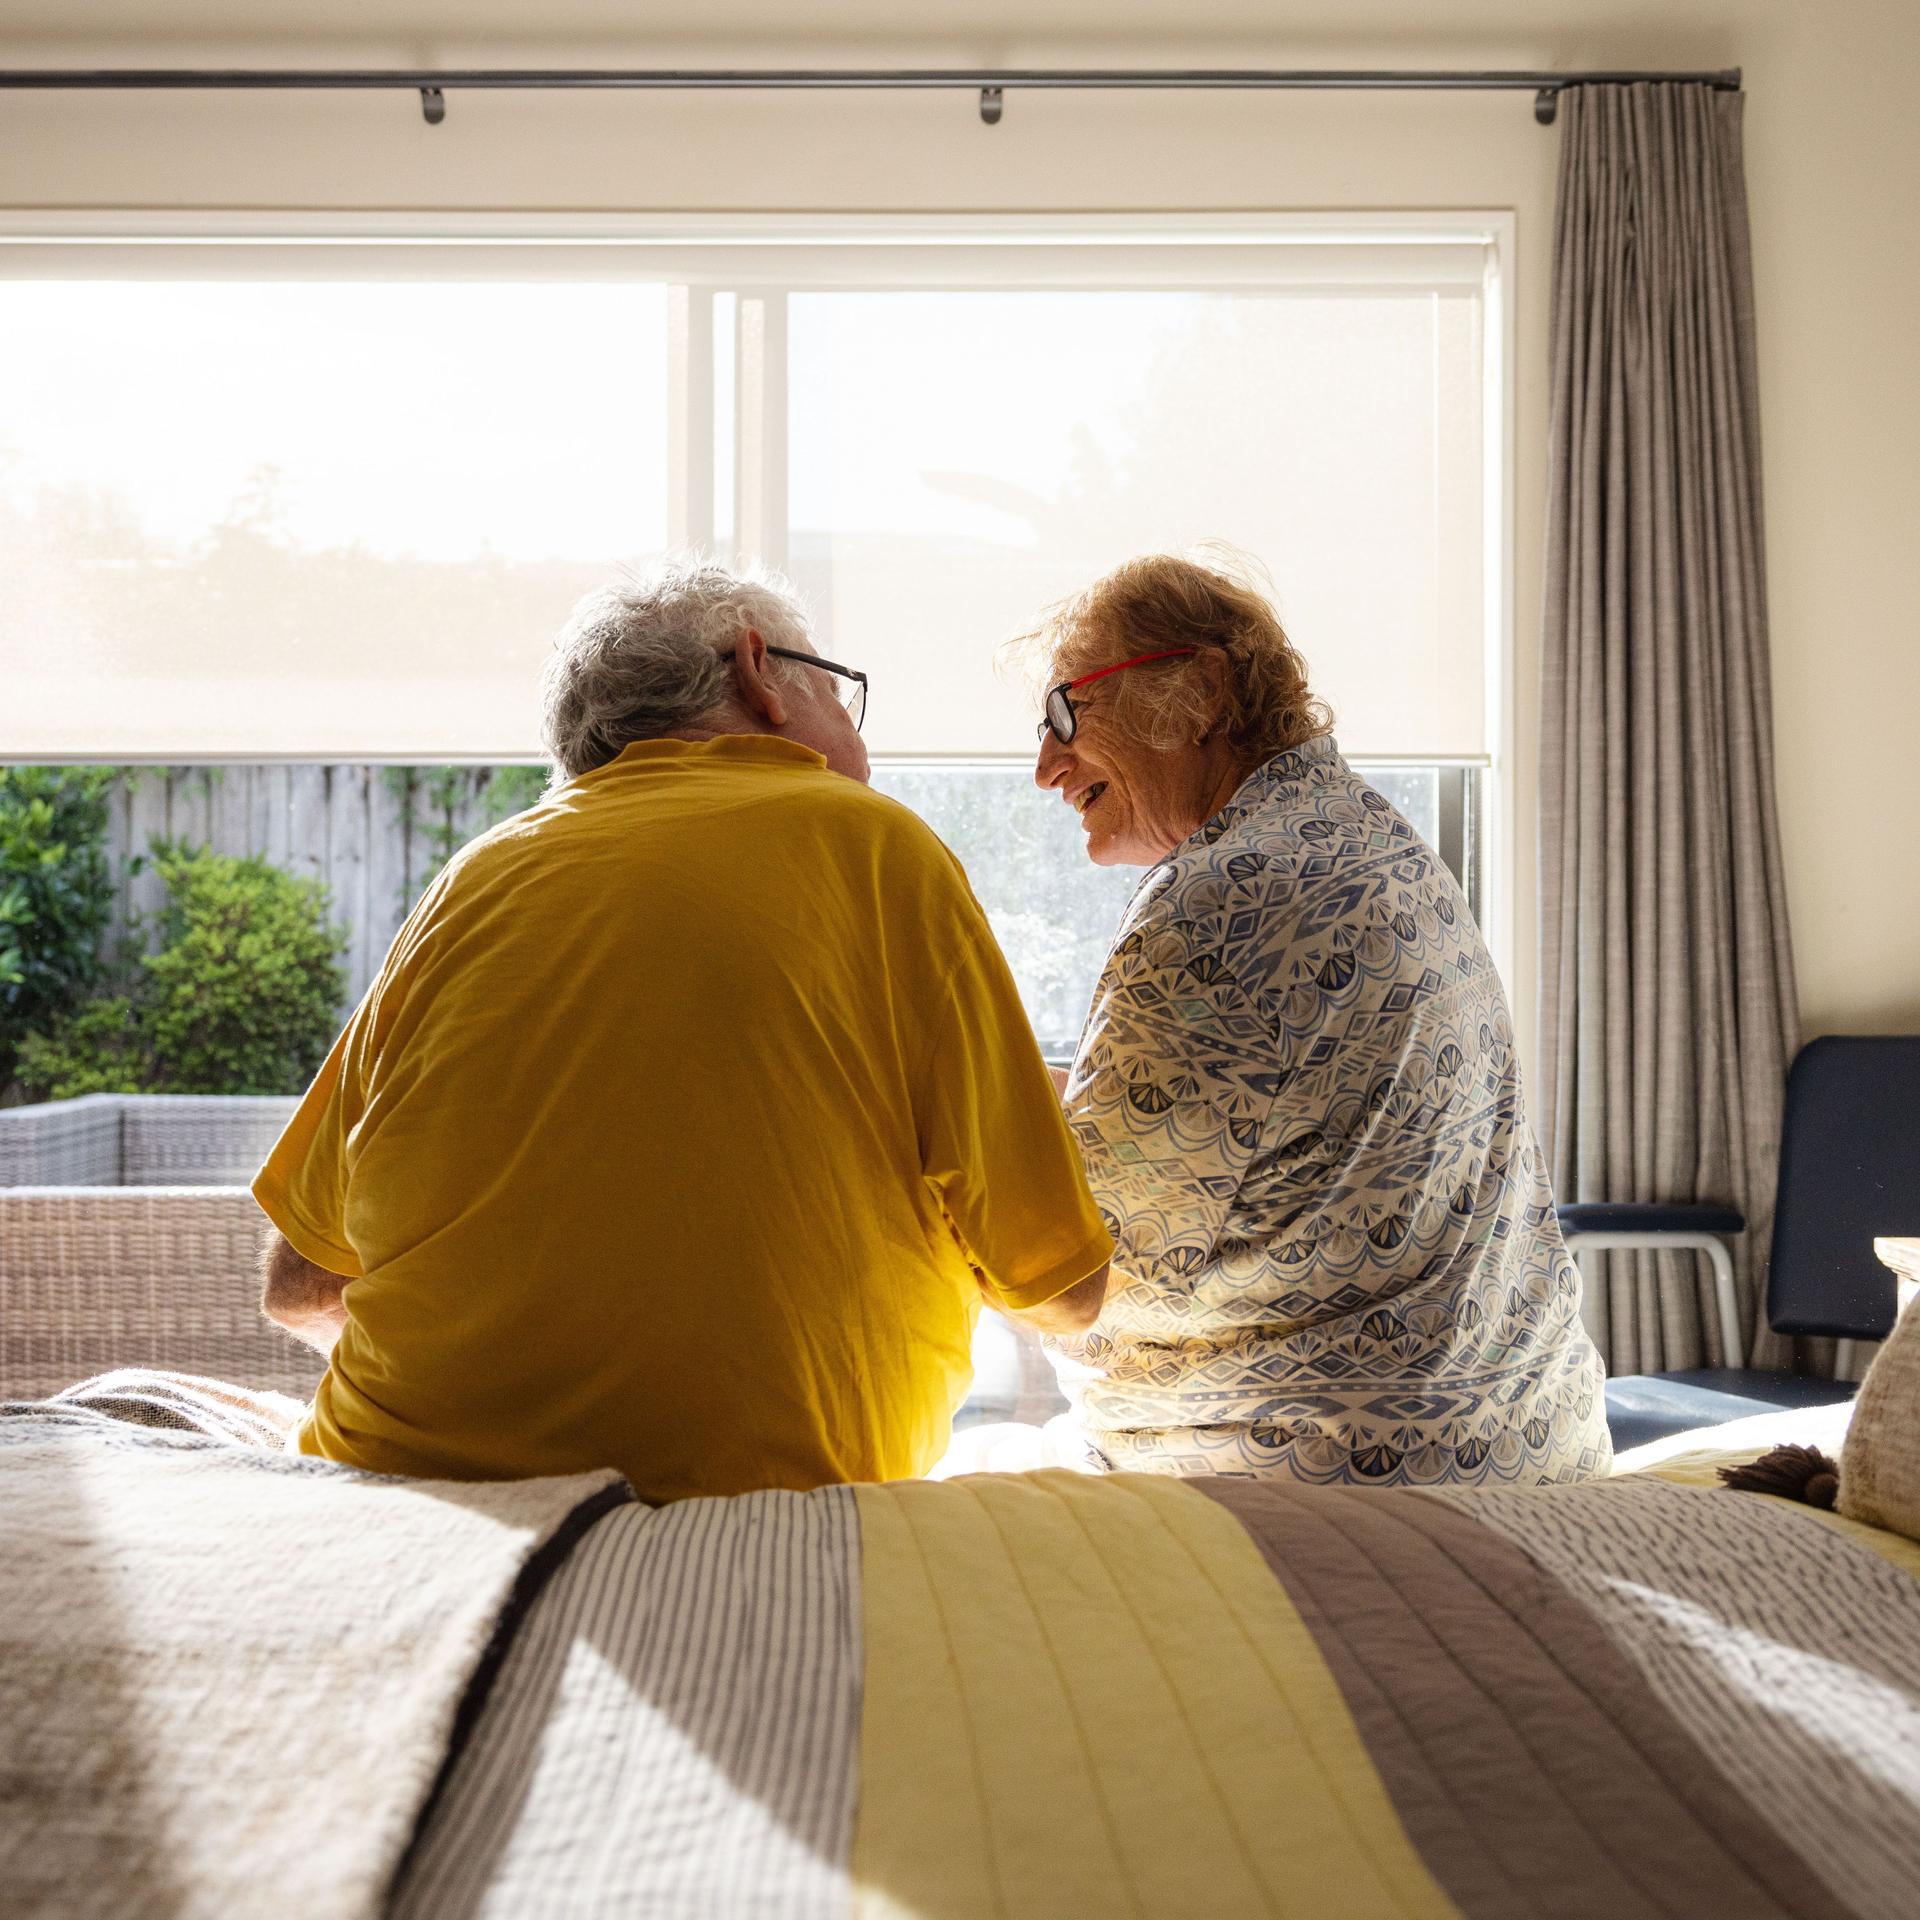 Ein älteres Paar sitzt auf dem Bett. Es scheint die Sonne. Sie lächeln sich an.